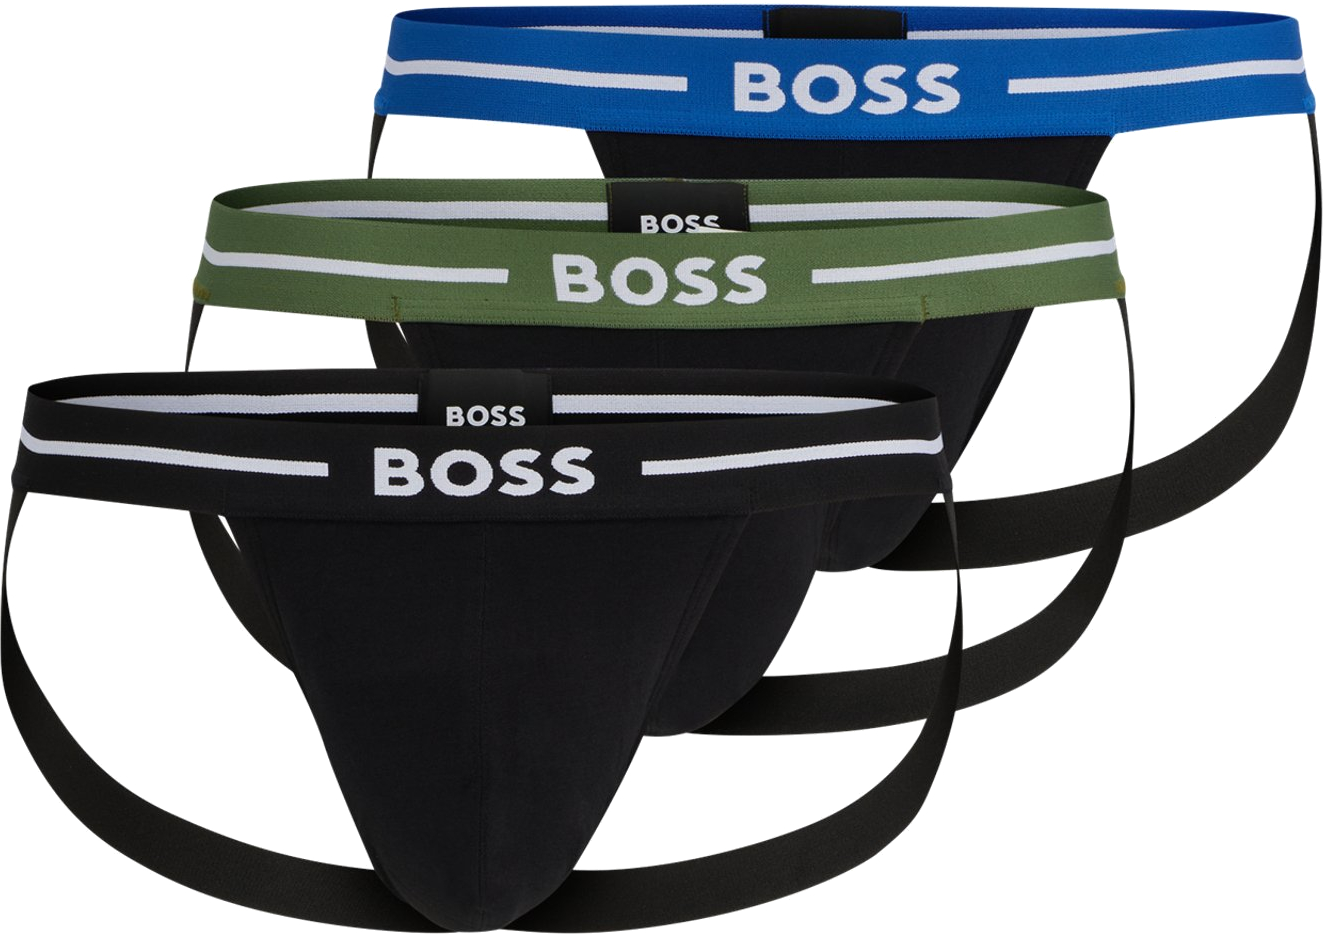 Hugo Boss 3 PACK - pánske slipy BOSS JOCK STRAP 50514965-965 L